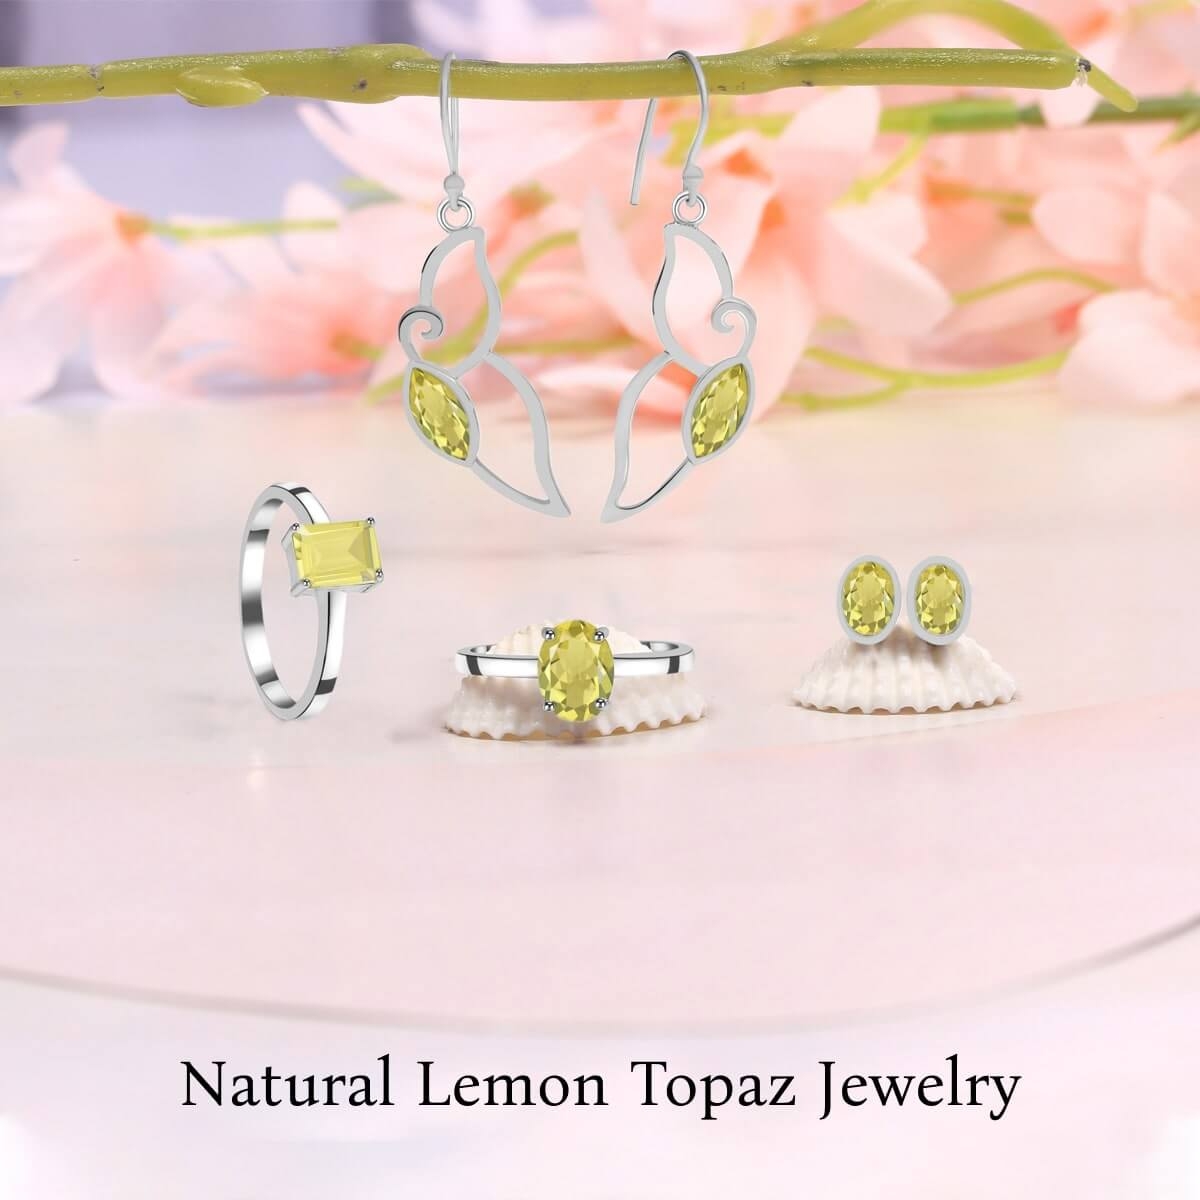 Luxurious Lemon Topaz Jewelry